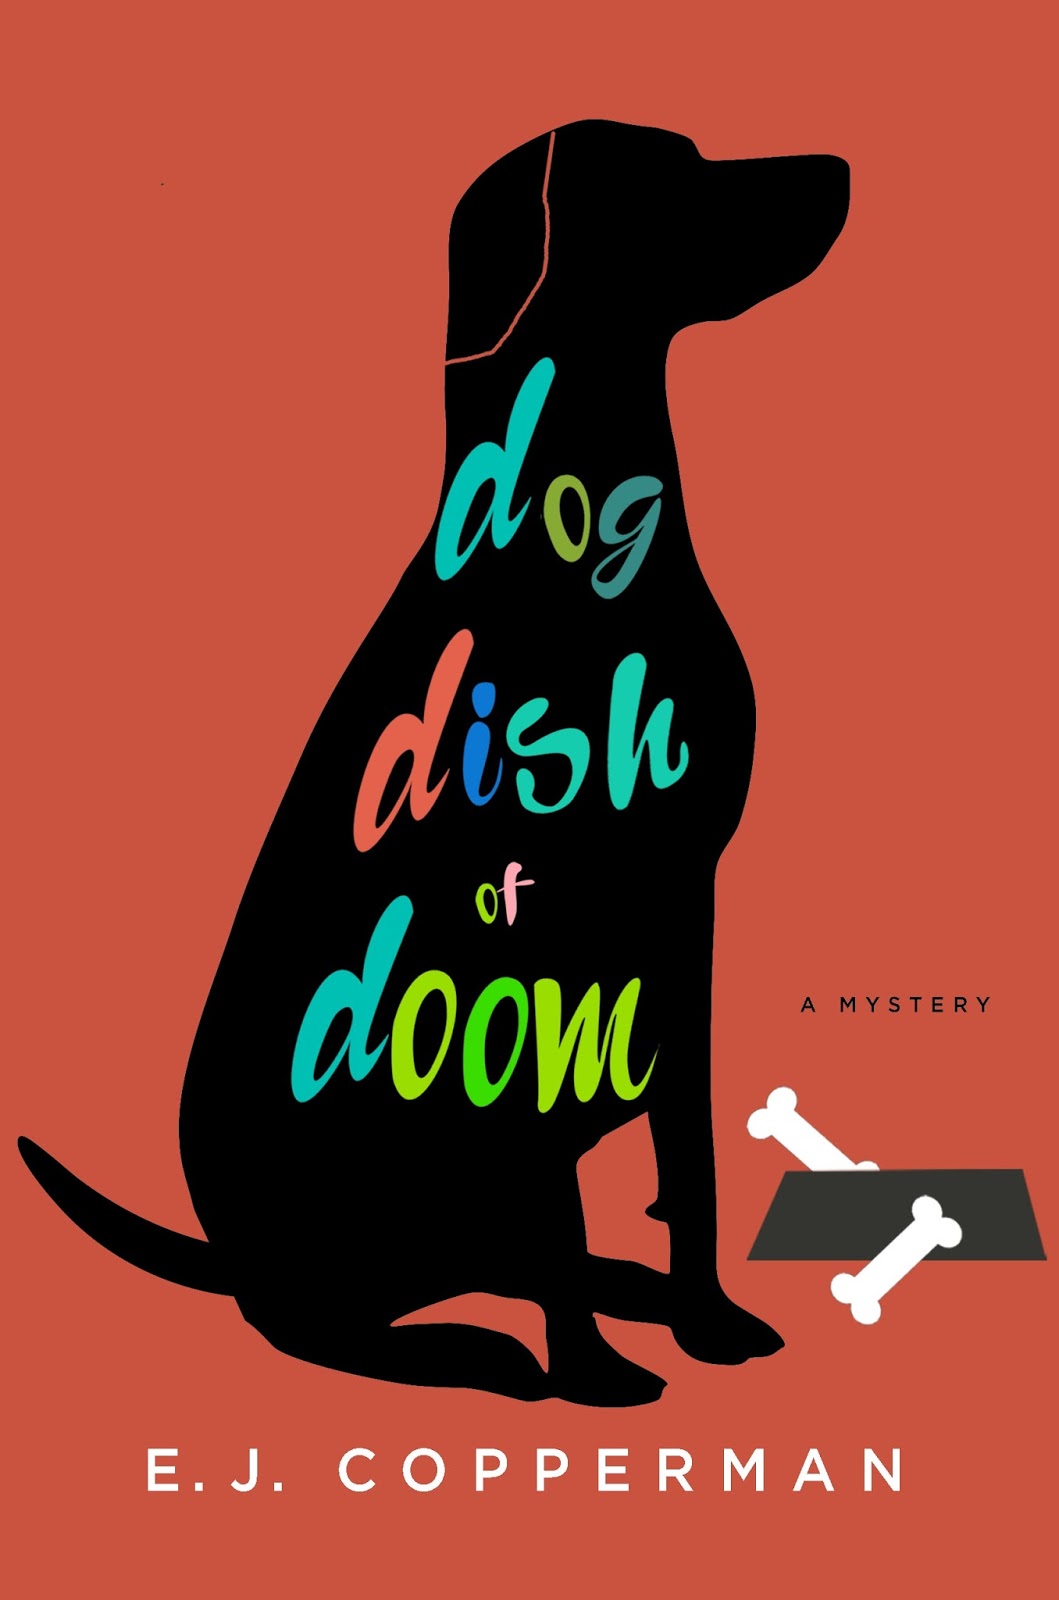 Dog dish. Блюз черной собаки книга обложка. Waudog обложка.